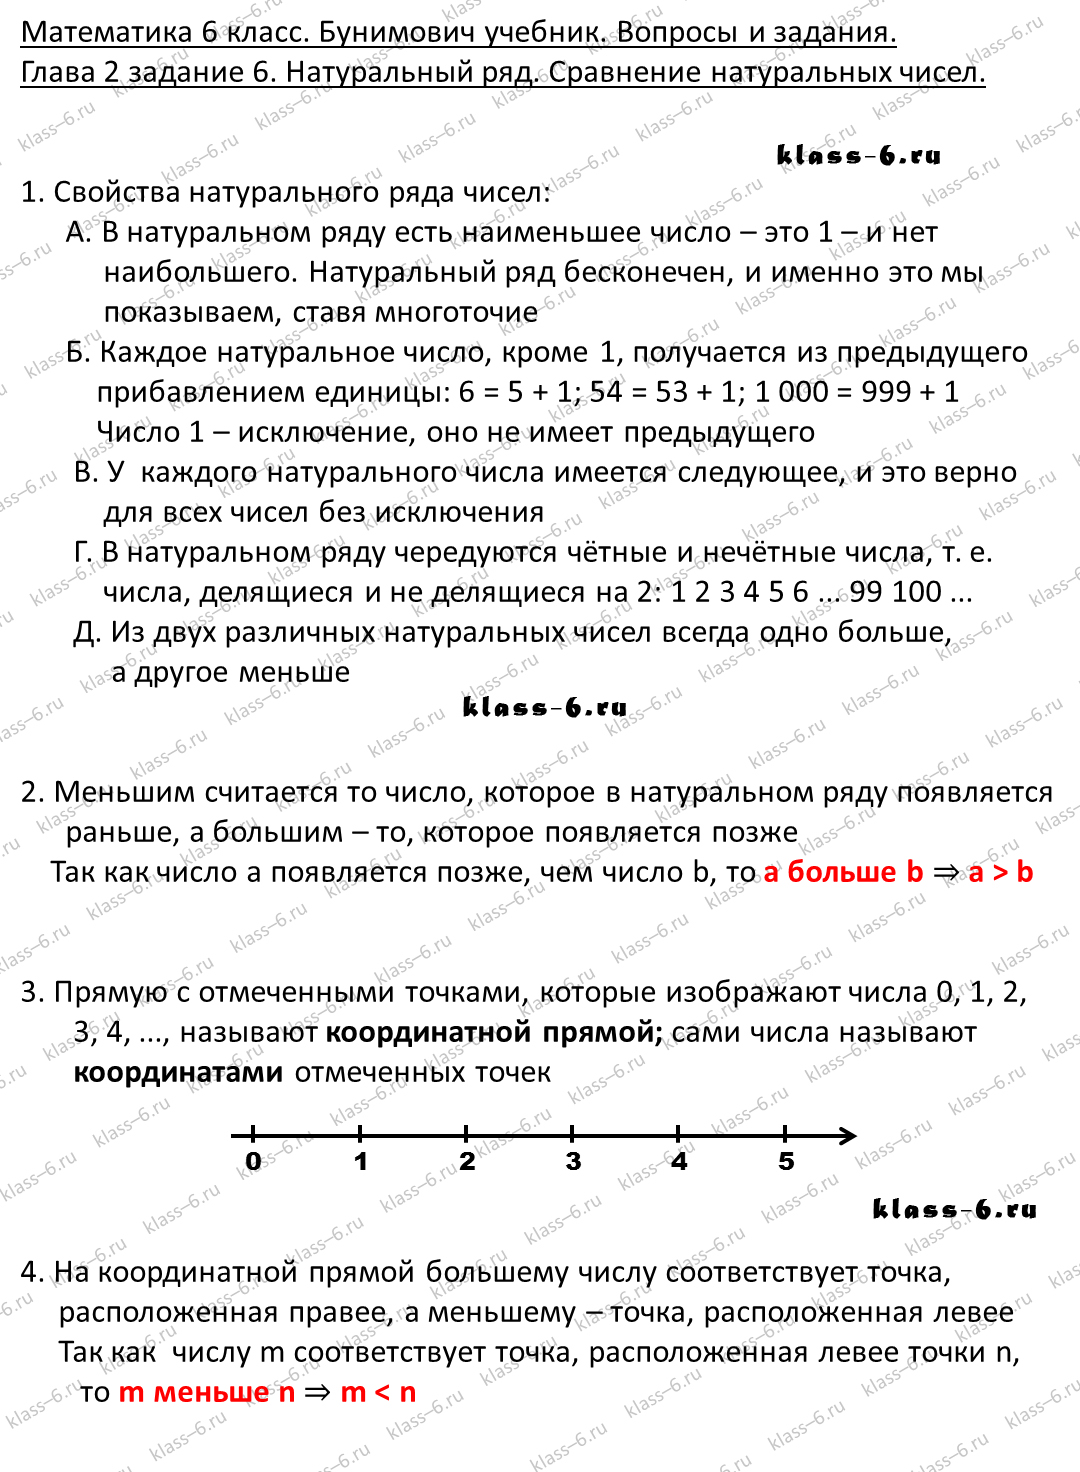 решебник и гдз по математике учебник Бунимович 5 класс вопросы и задания 2-6